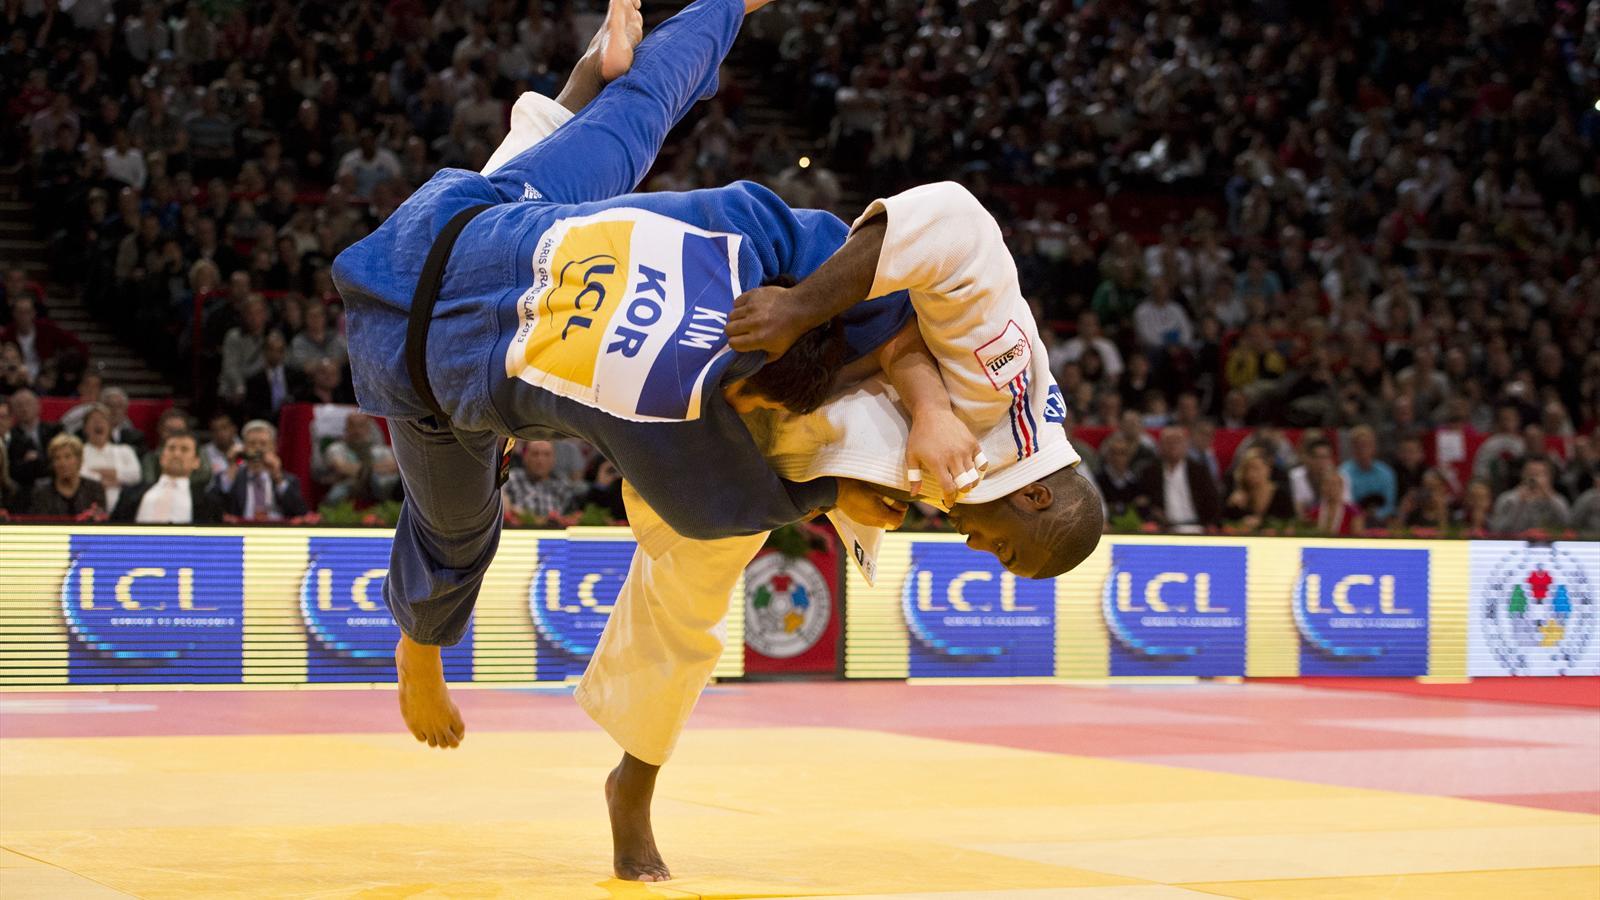 Watch: 20 Best Throws of Judo Superstars, Riner, Iliadis